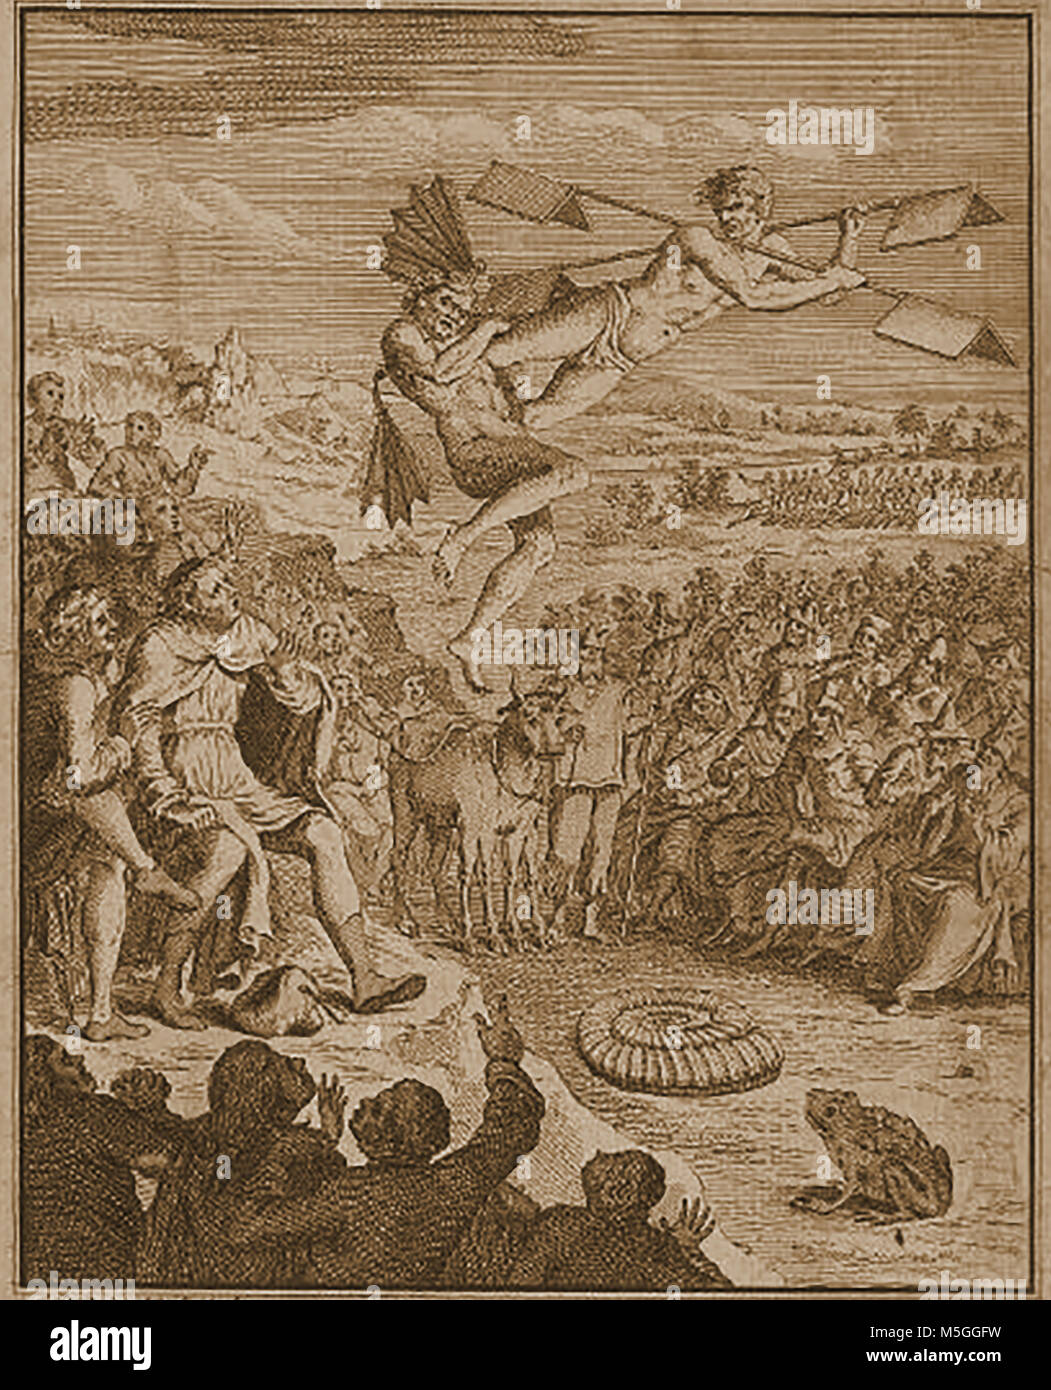 Historische Luftfahrt, Luftballons und fliegenden Maschinen - eines Künstlers Eindruck eines fliegenden Maschine 1751 Stockfoto